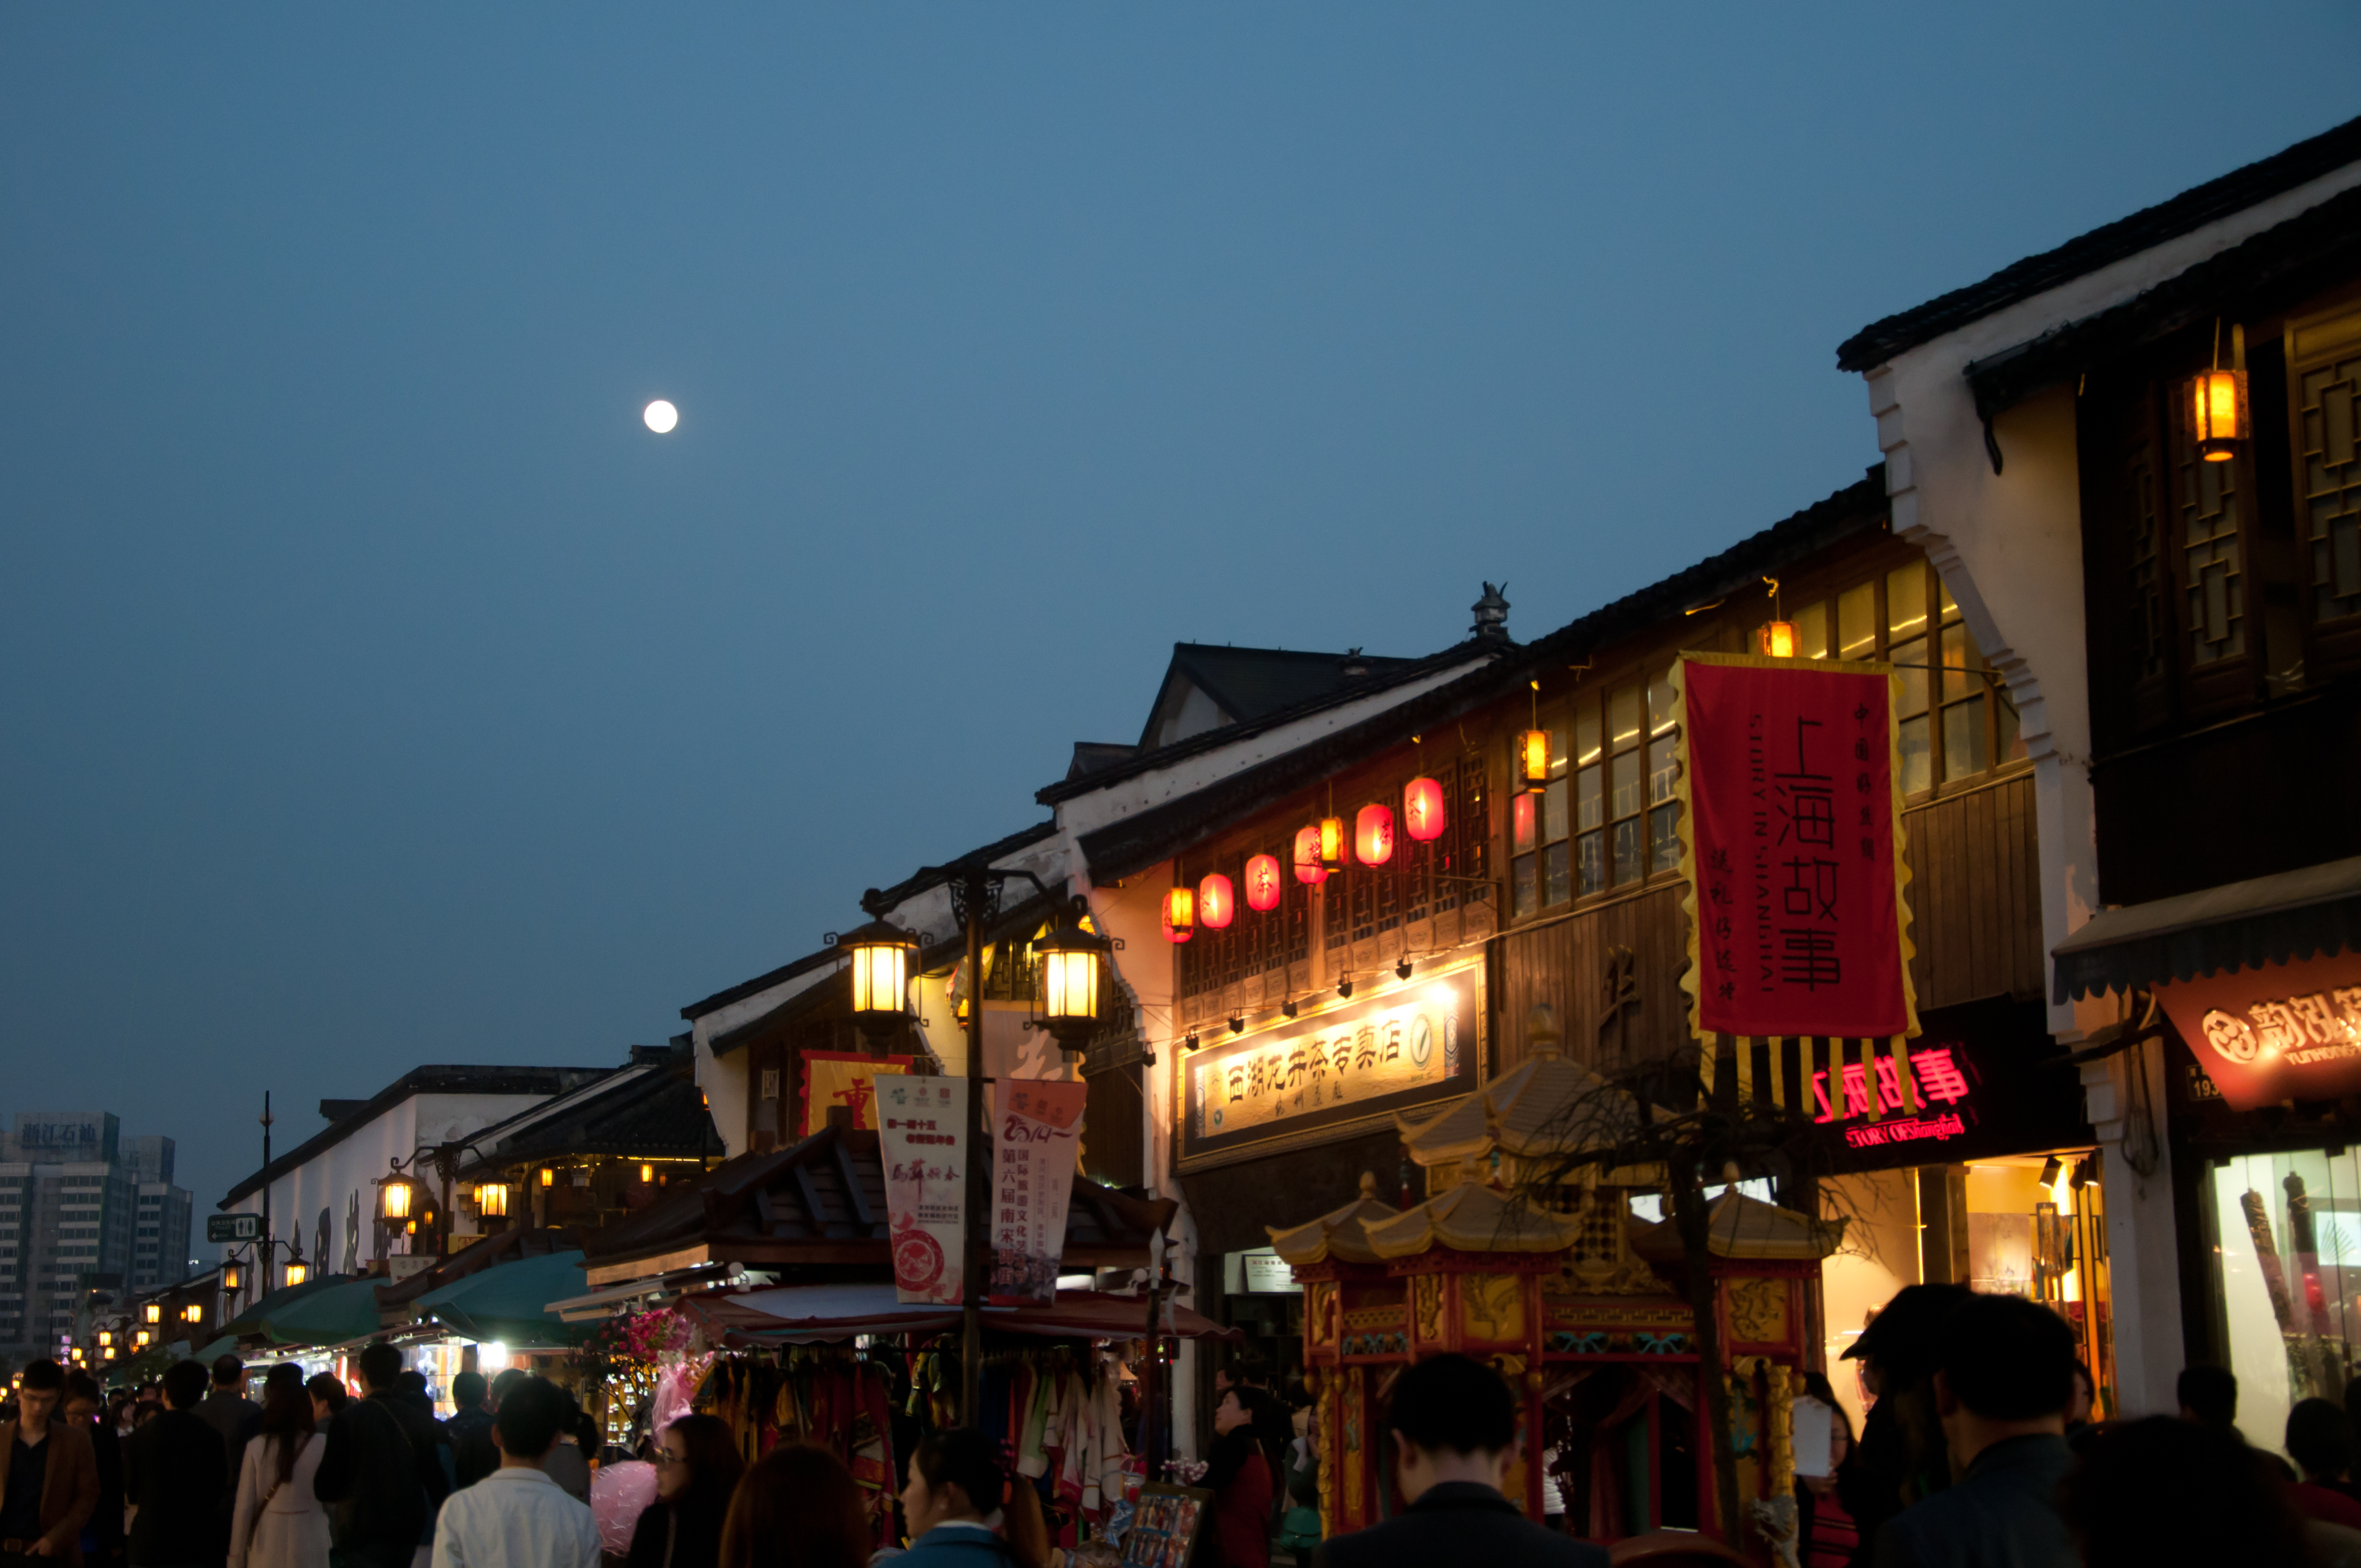 有特产,有美景,领略老杭州文化,这里绝对不可少 一直觉得河坊街还是要